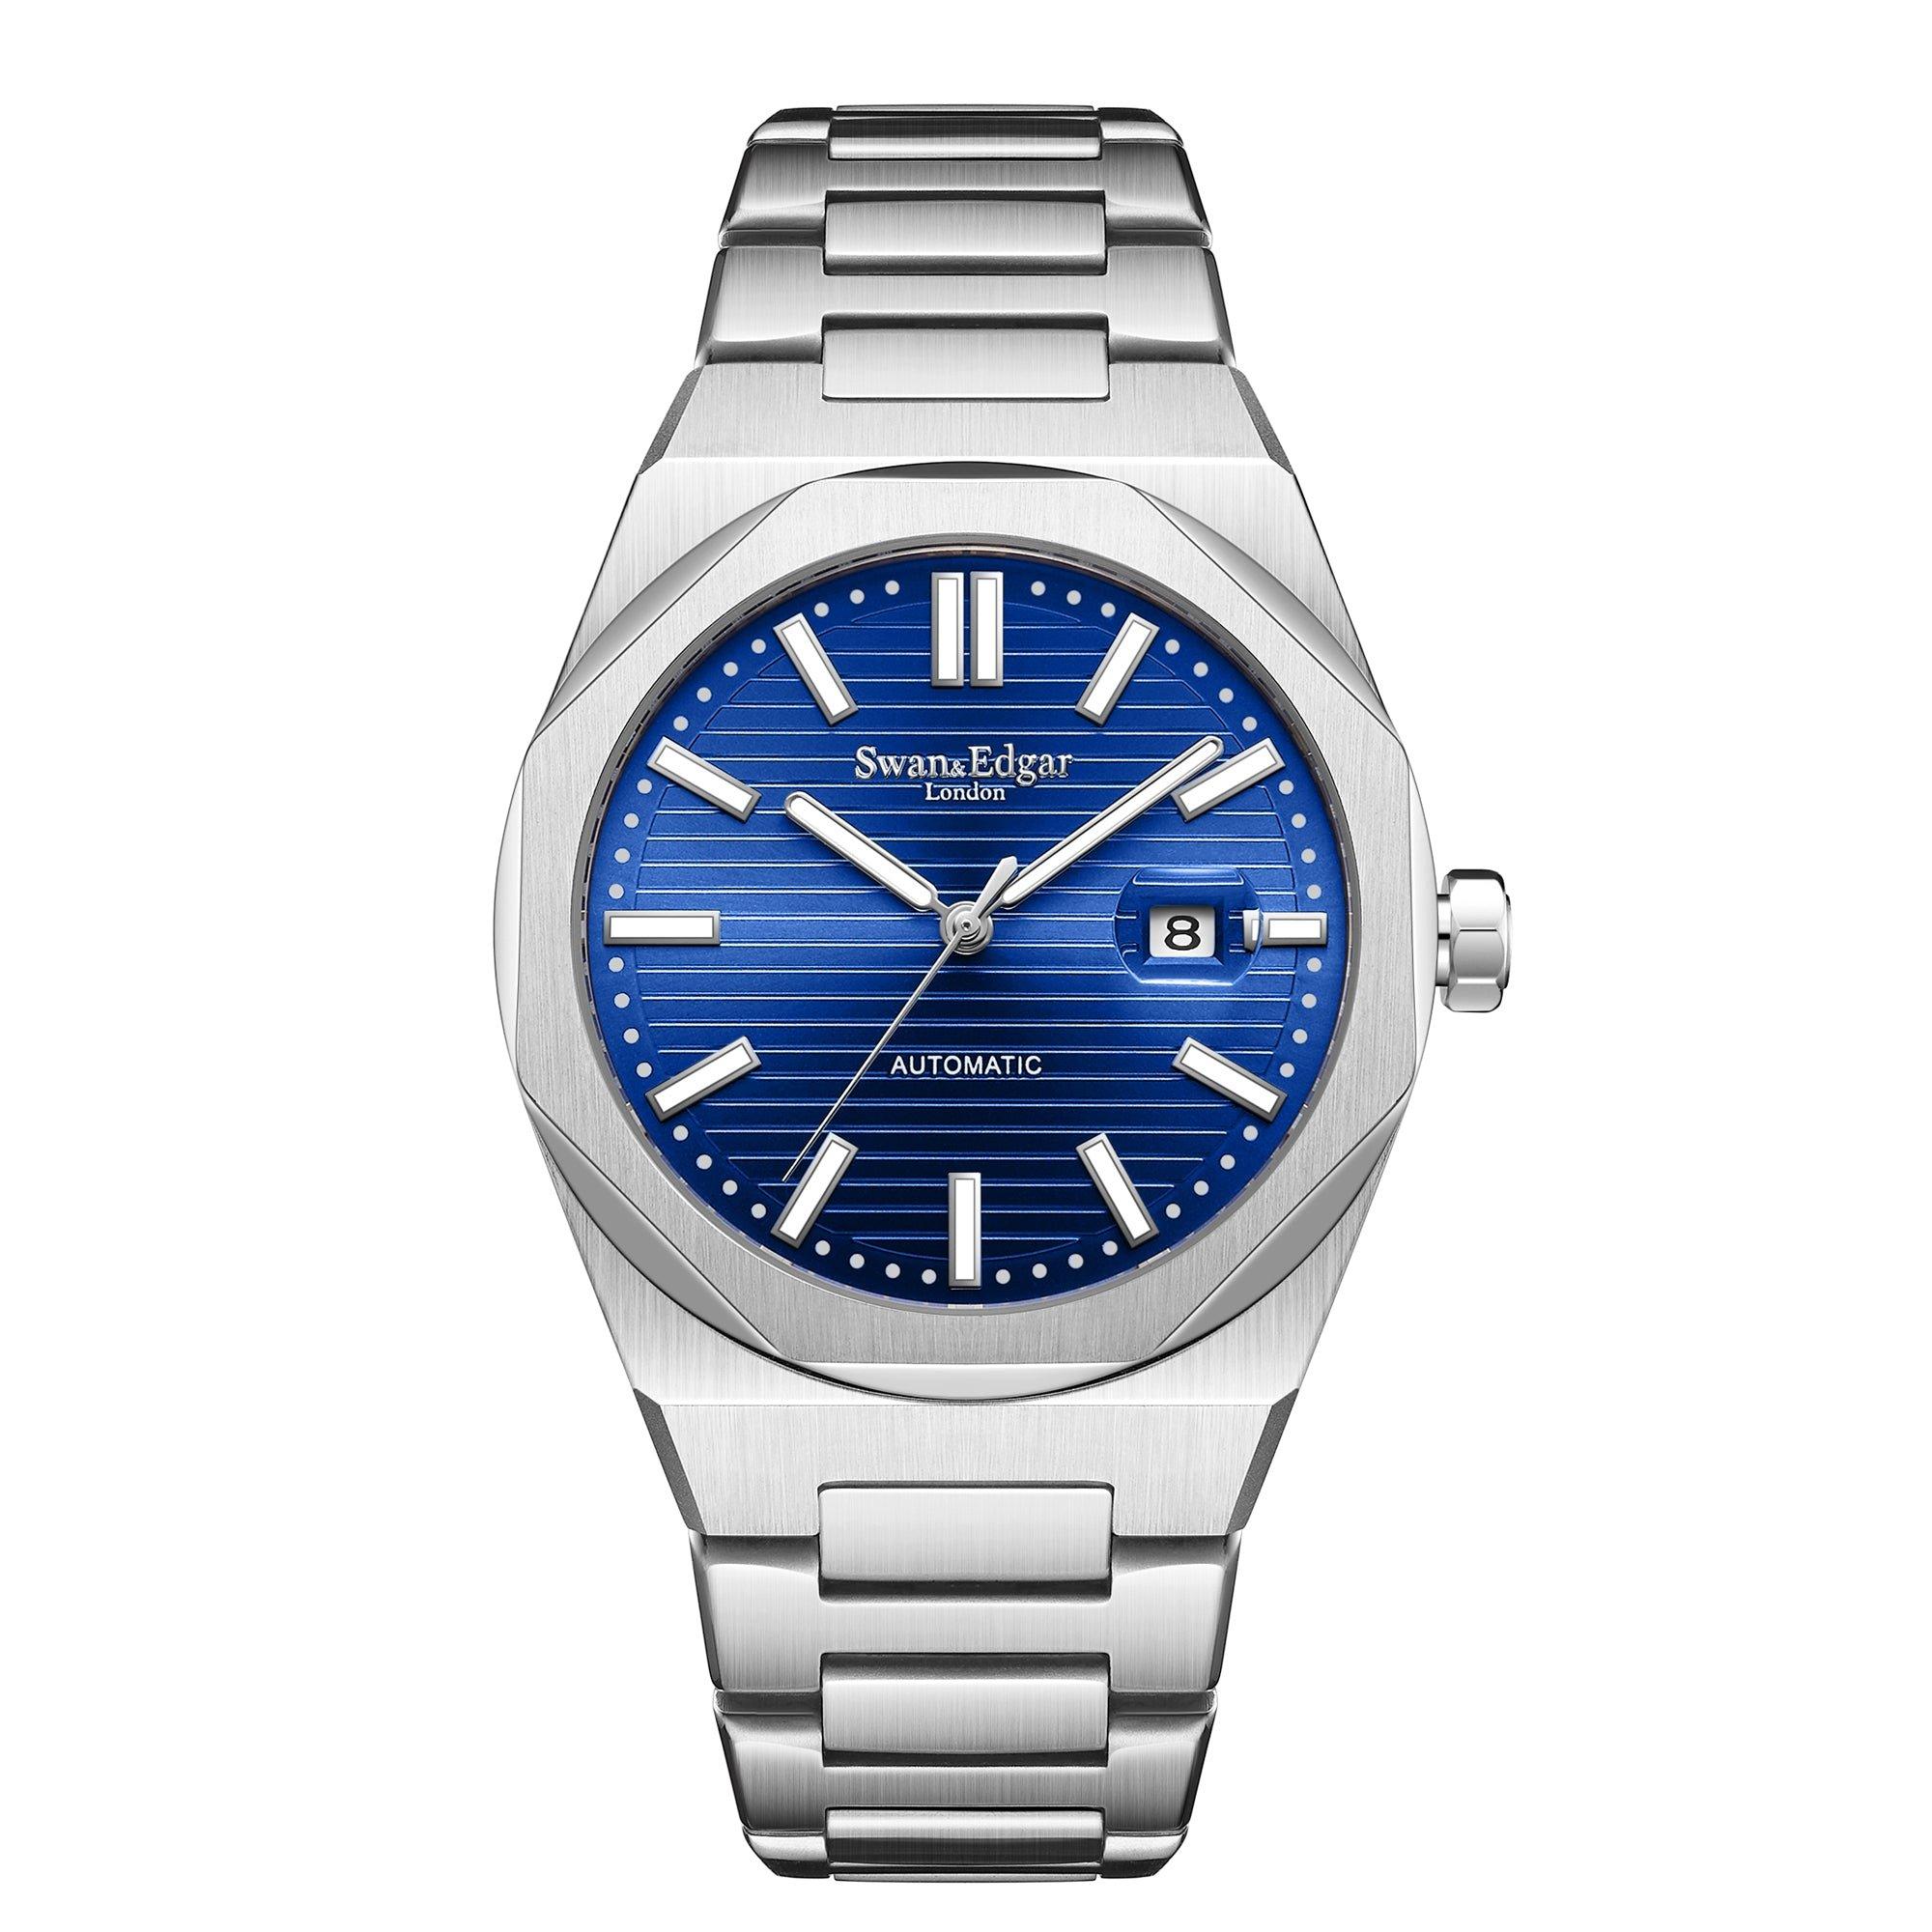 Автоматические часы Sovereine ручной сборки Swan & Edgar ограниченной серии, синий мужские часы rhythm automatic a1104l02